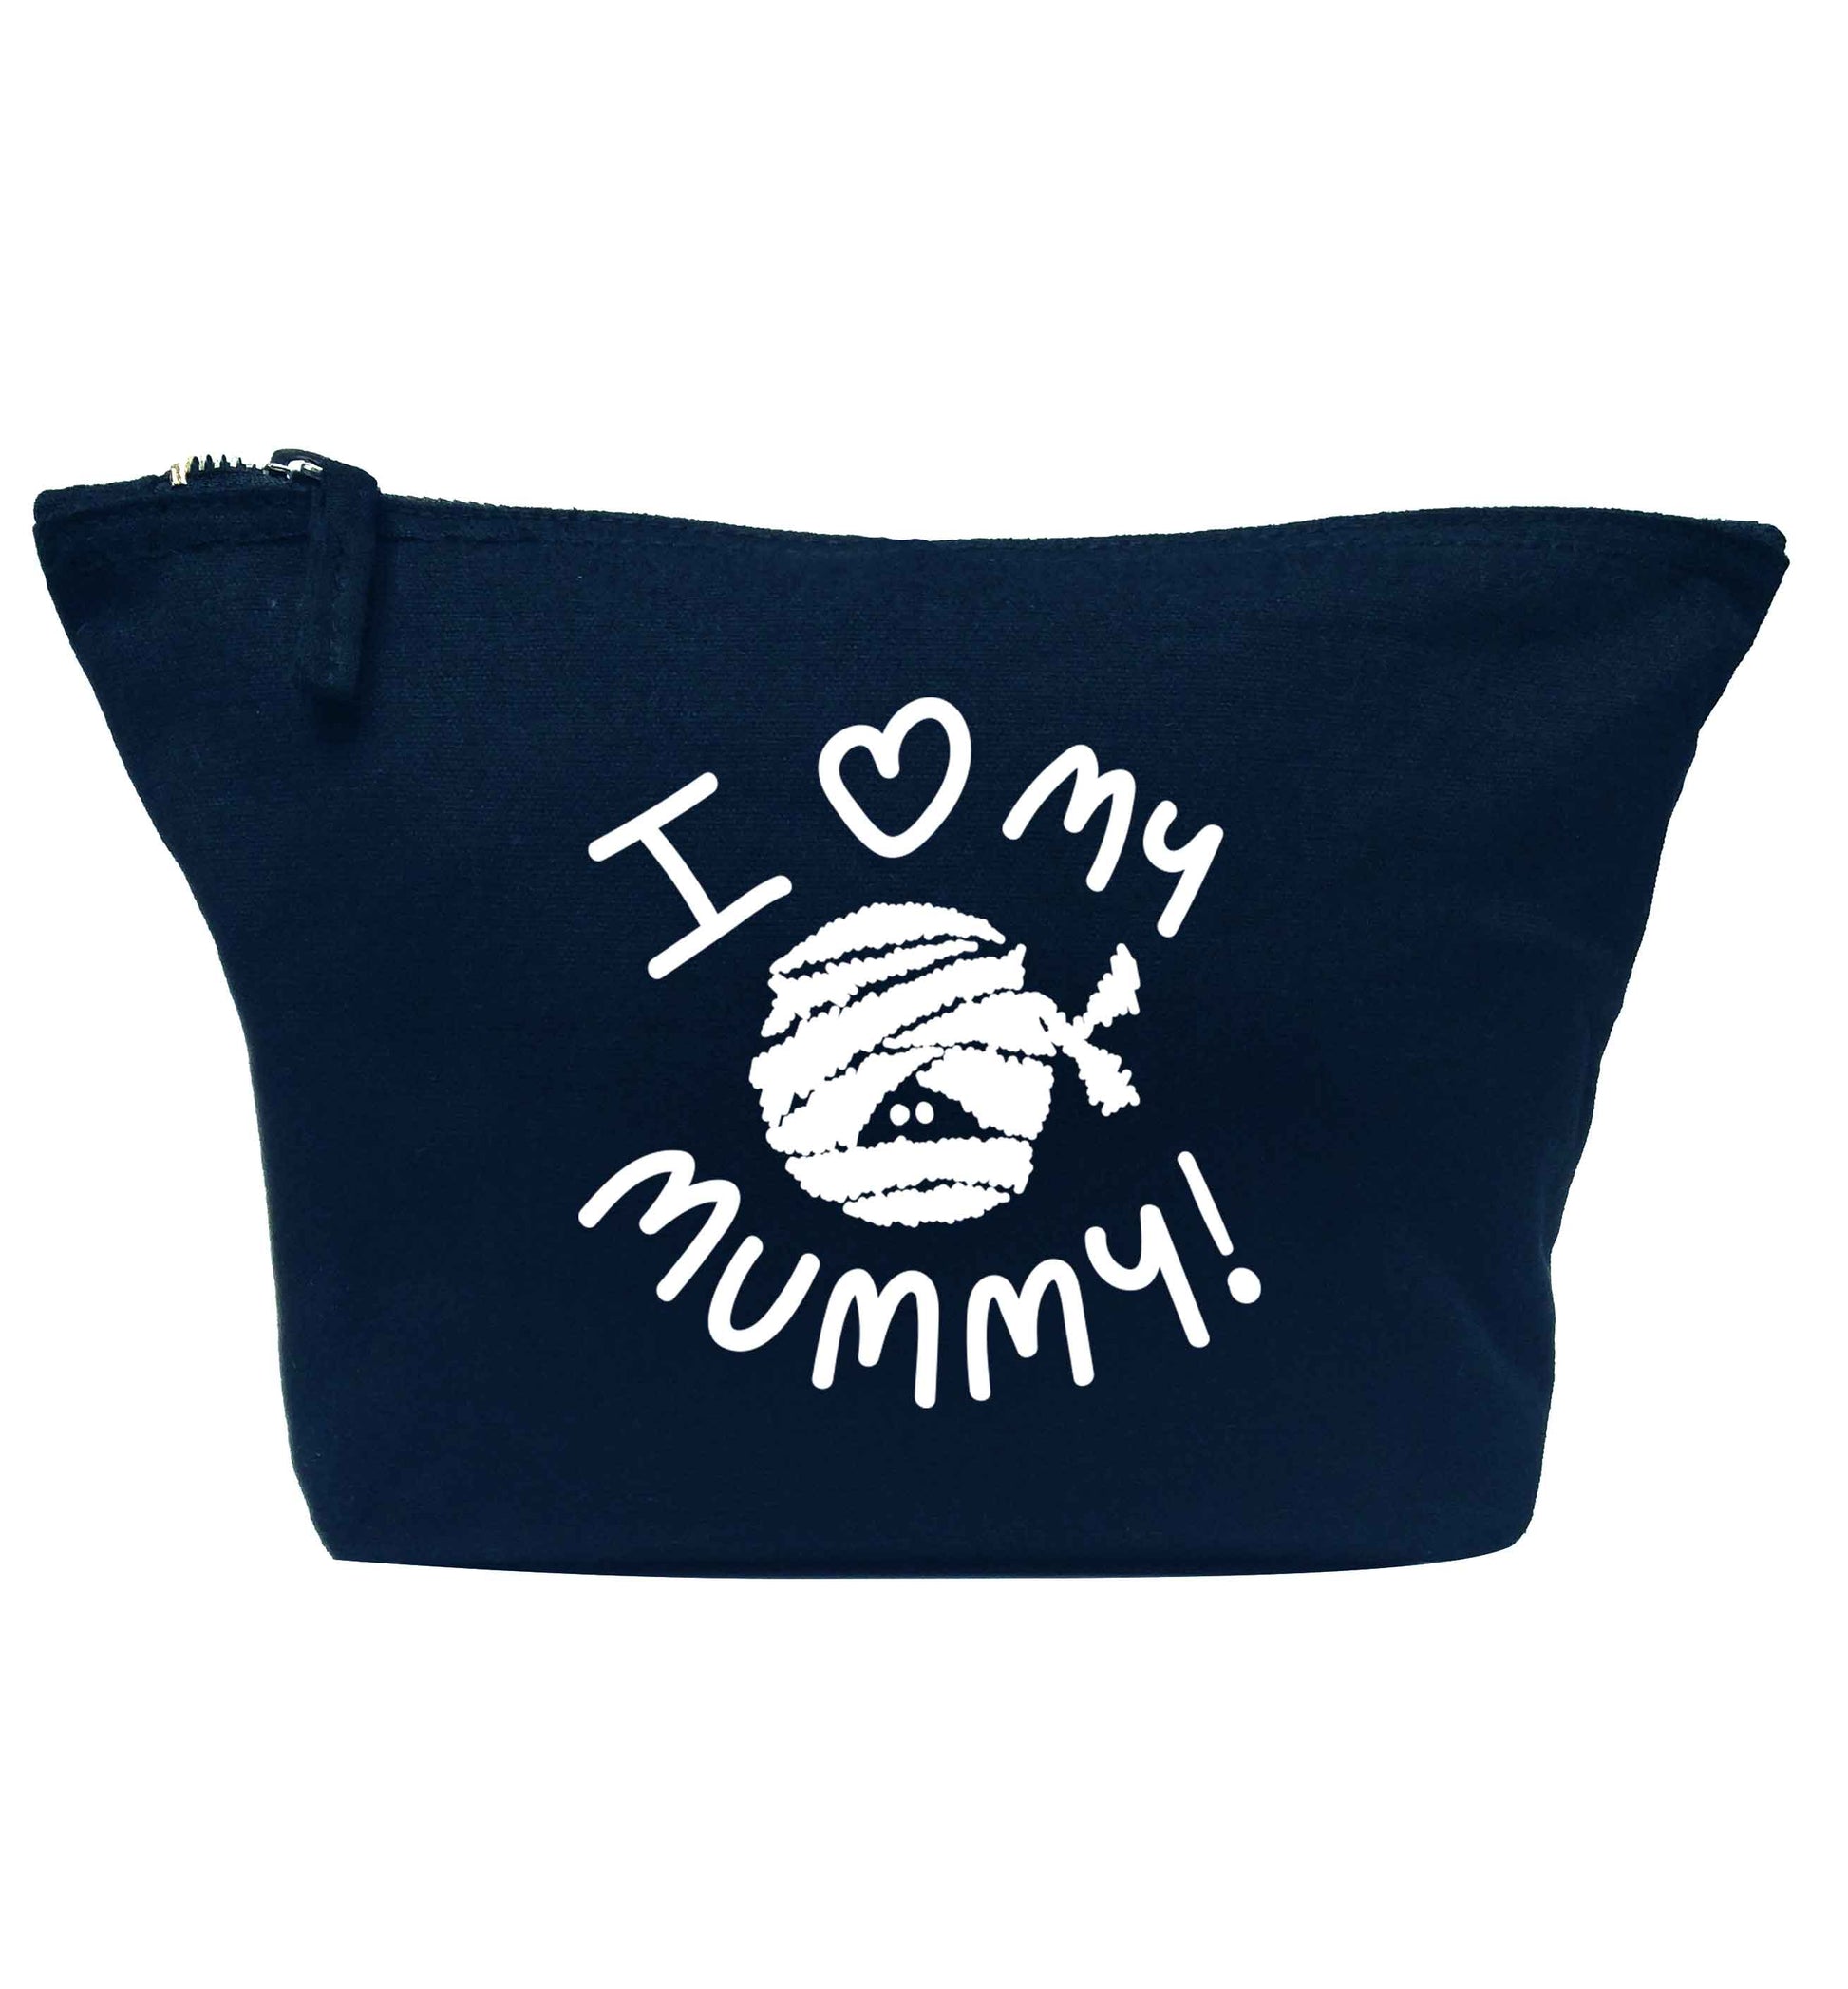 I love my mummy halloween pun navy makeup bag